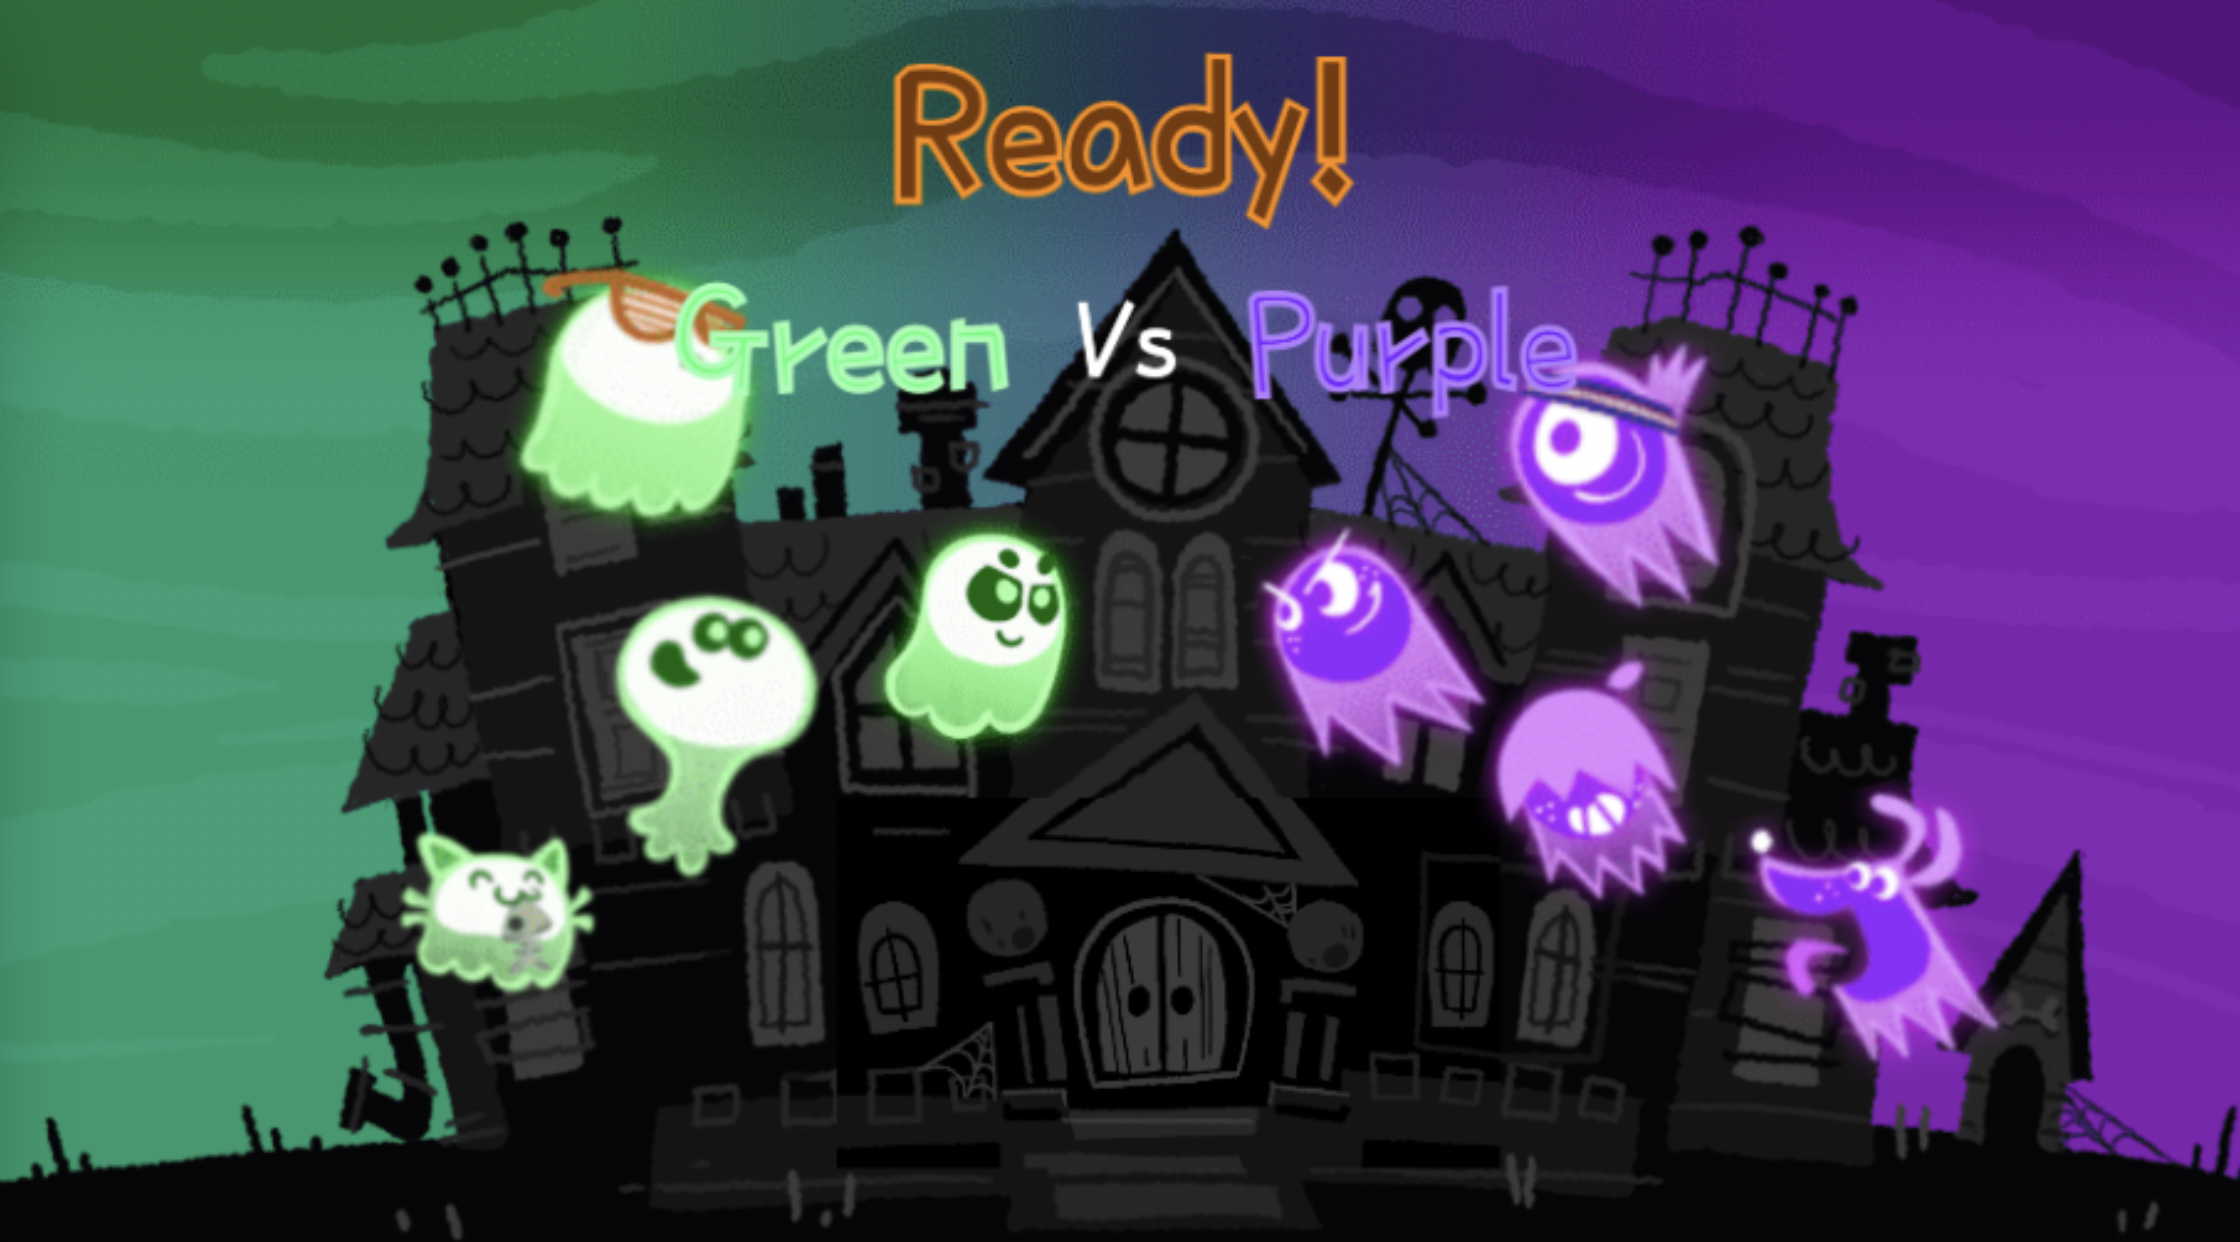 Google lança Doodle com jogo multiplayer para celebrar o Halloween